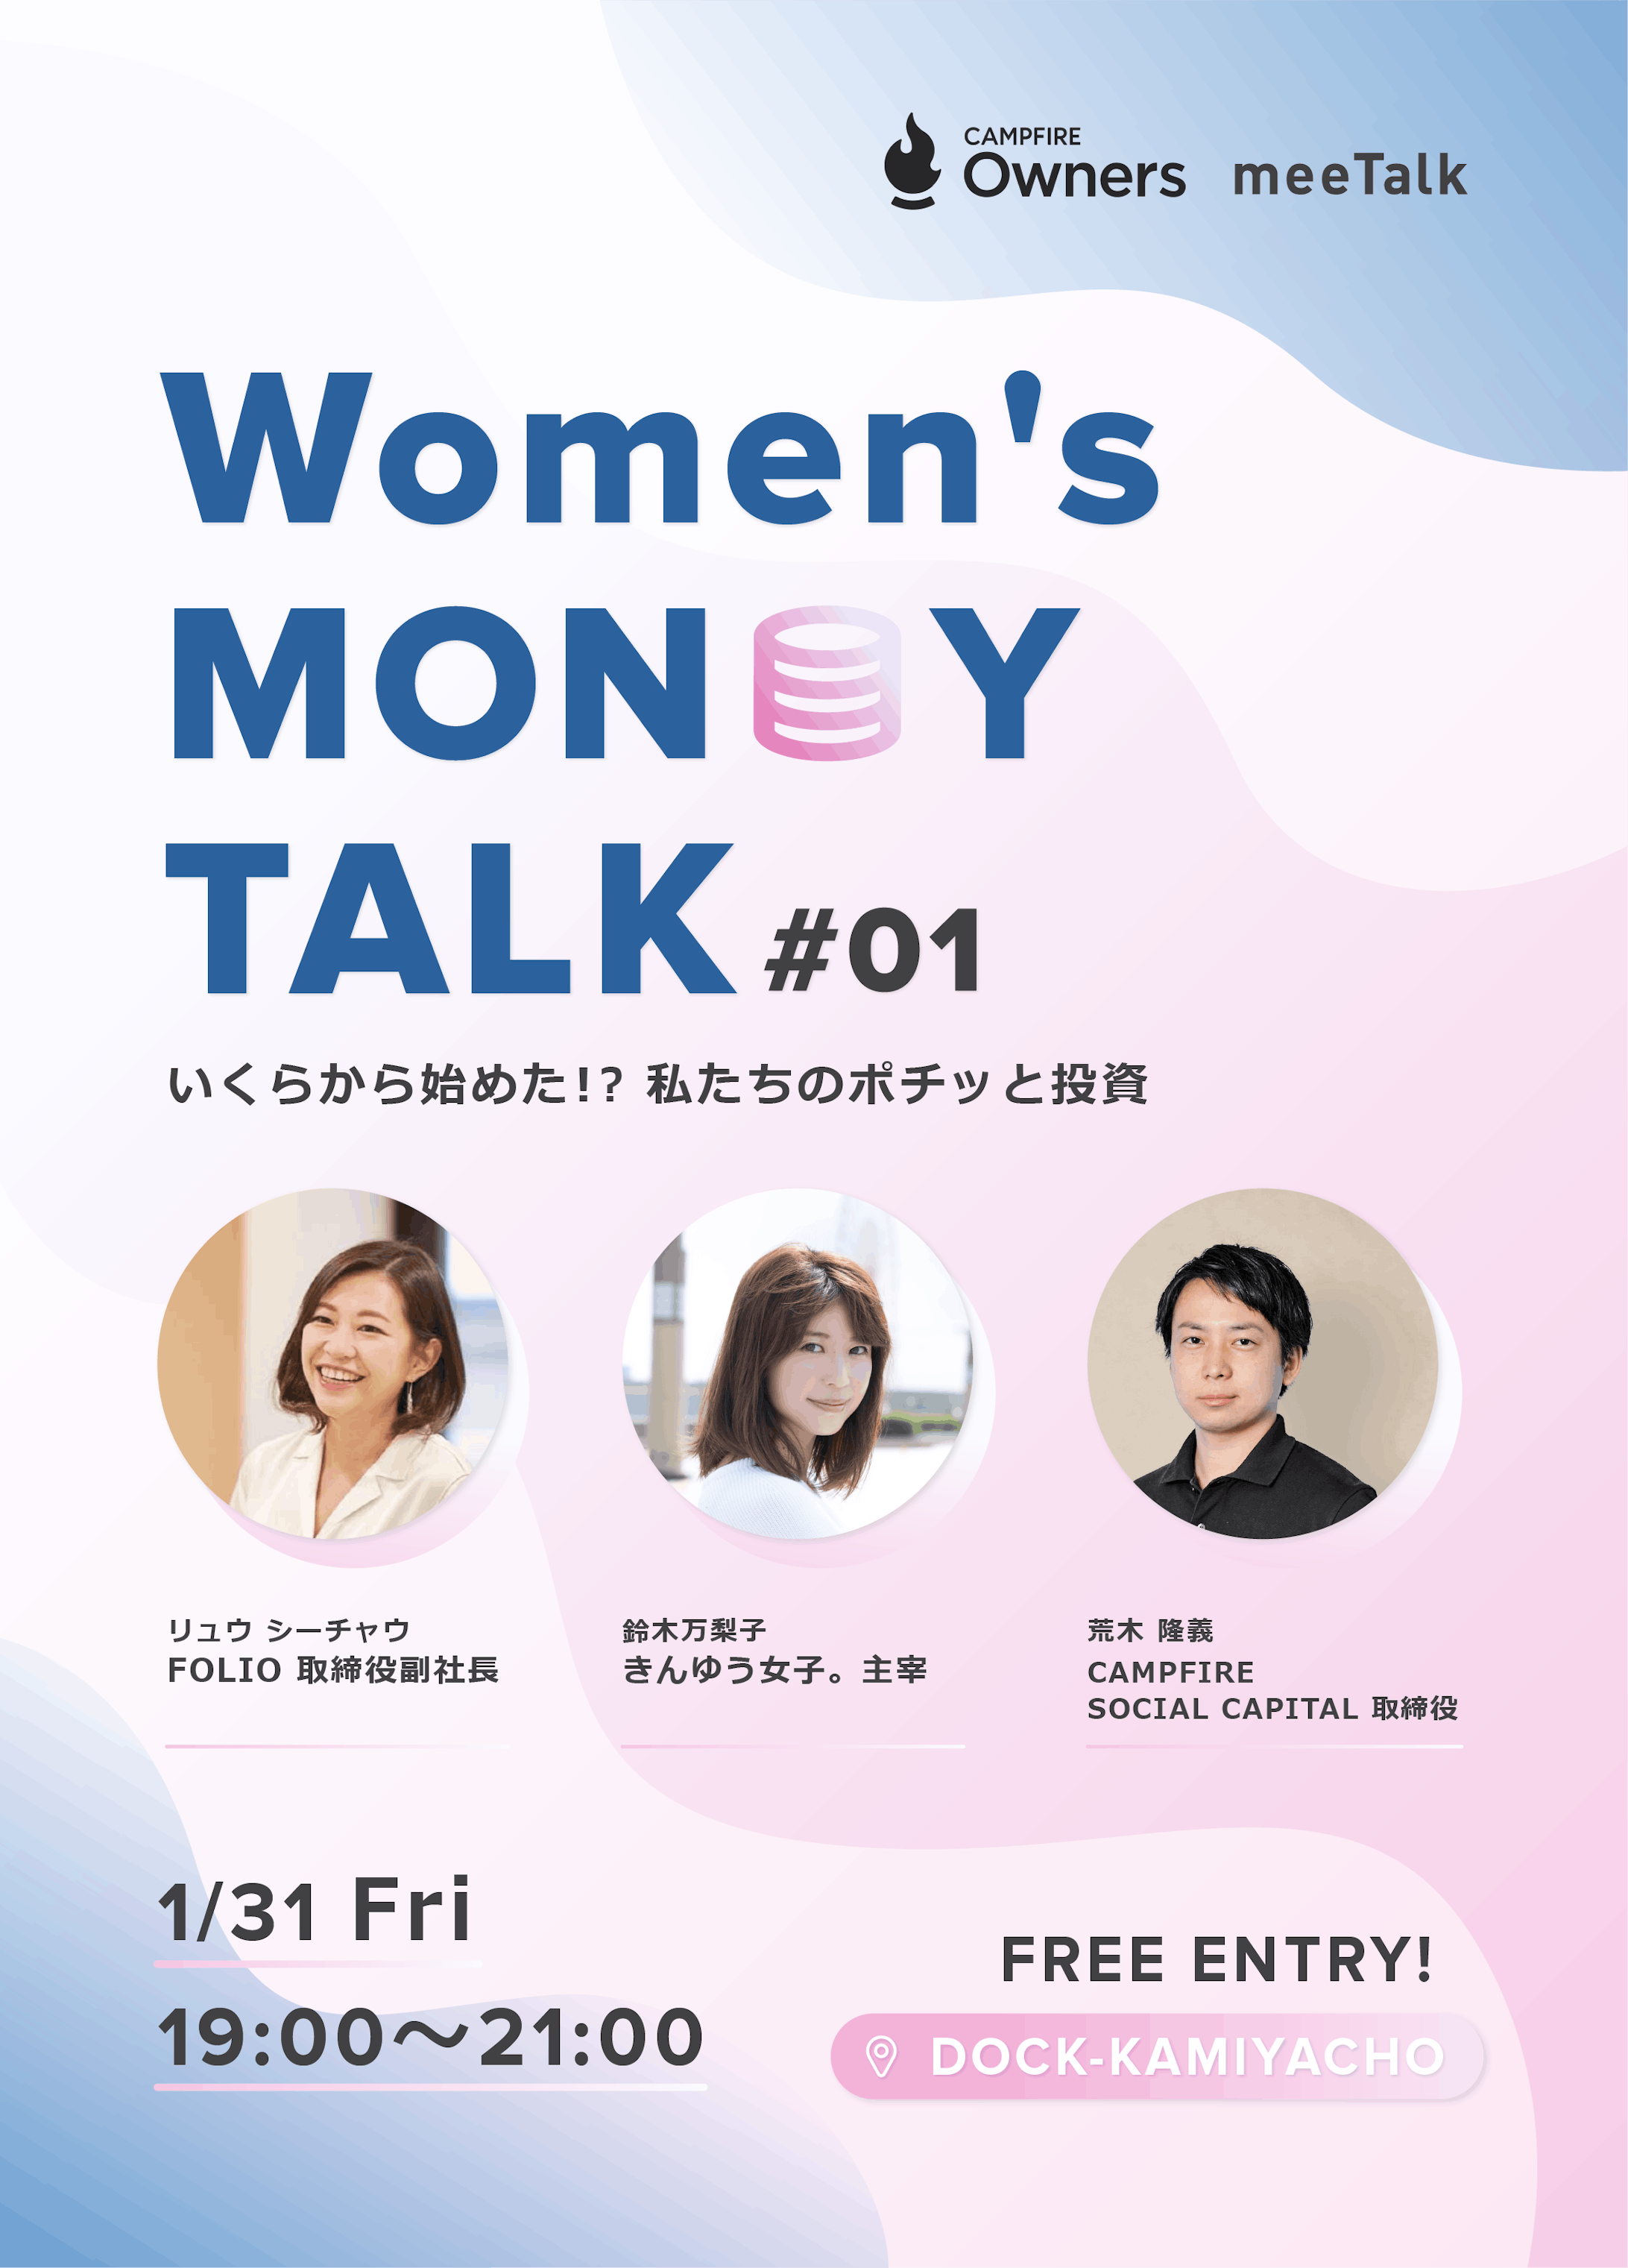 Women's Money Talk by Campfire&meeTalk : Event banner -2